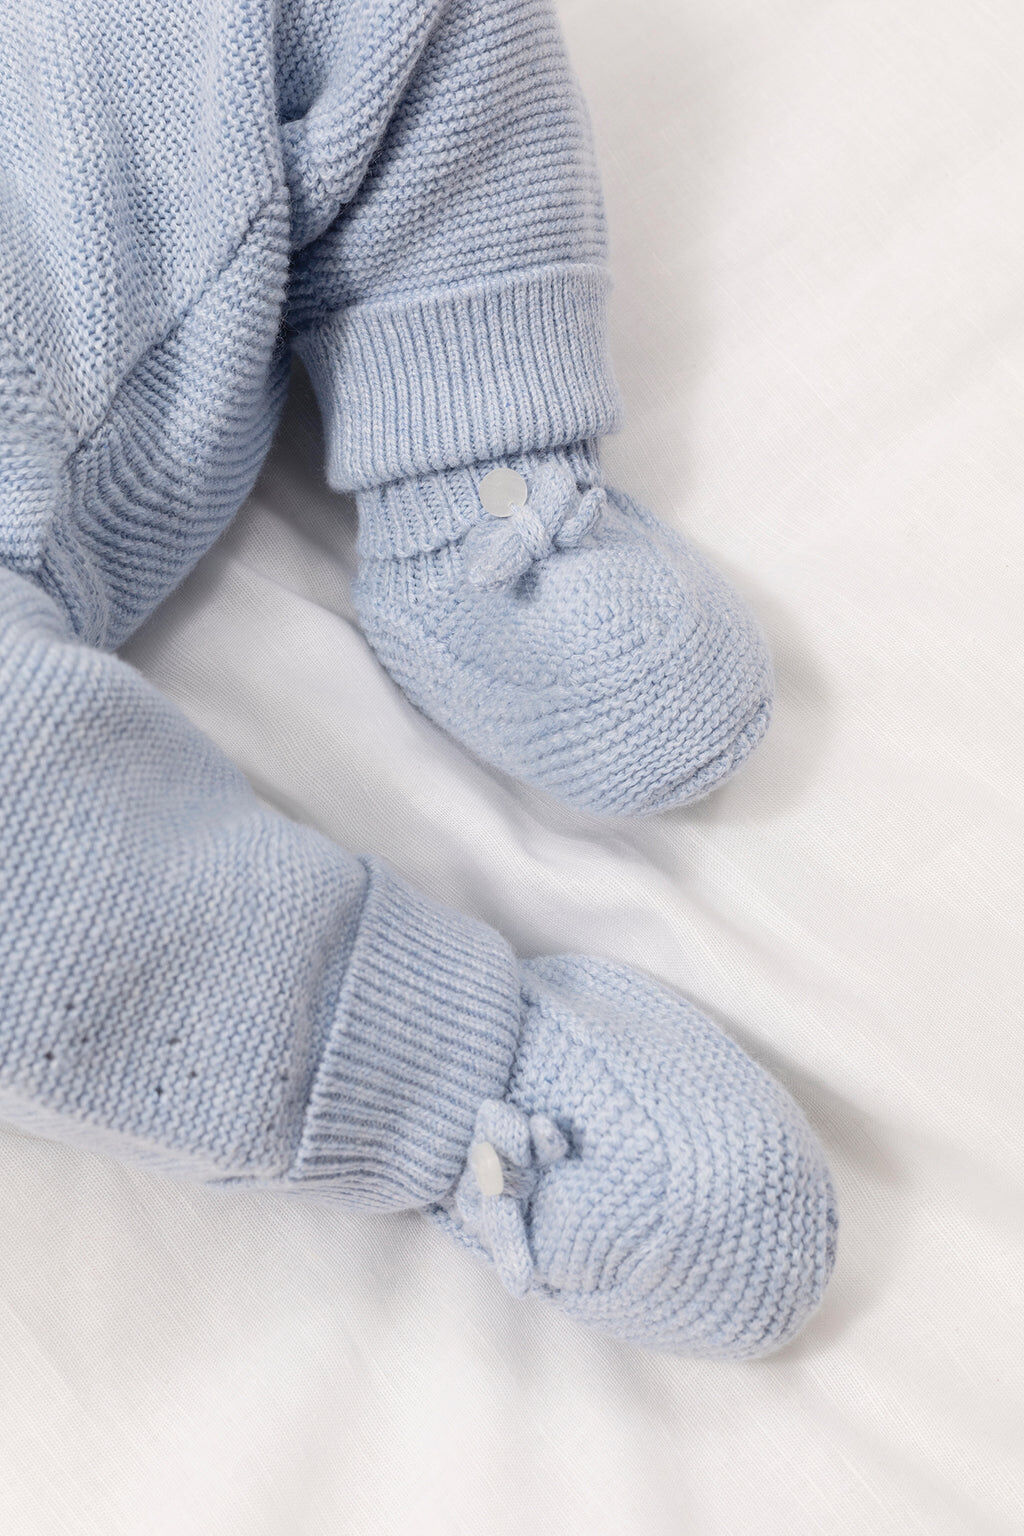 Slippers - Sky blue Knitwear